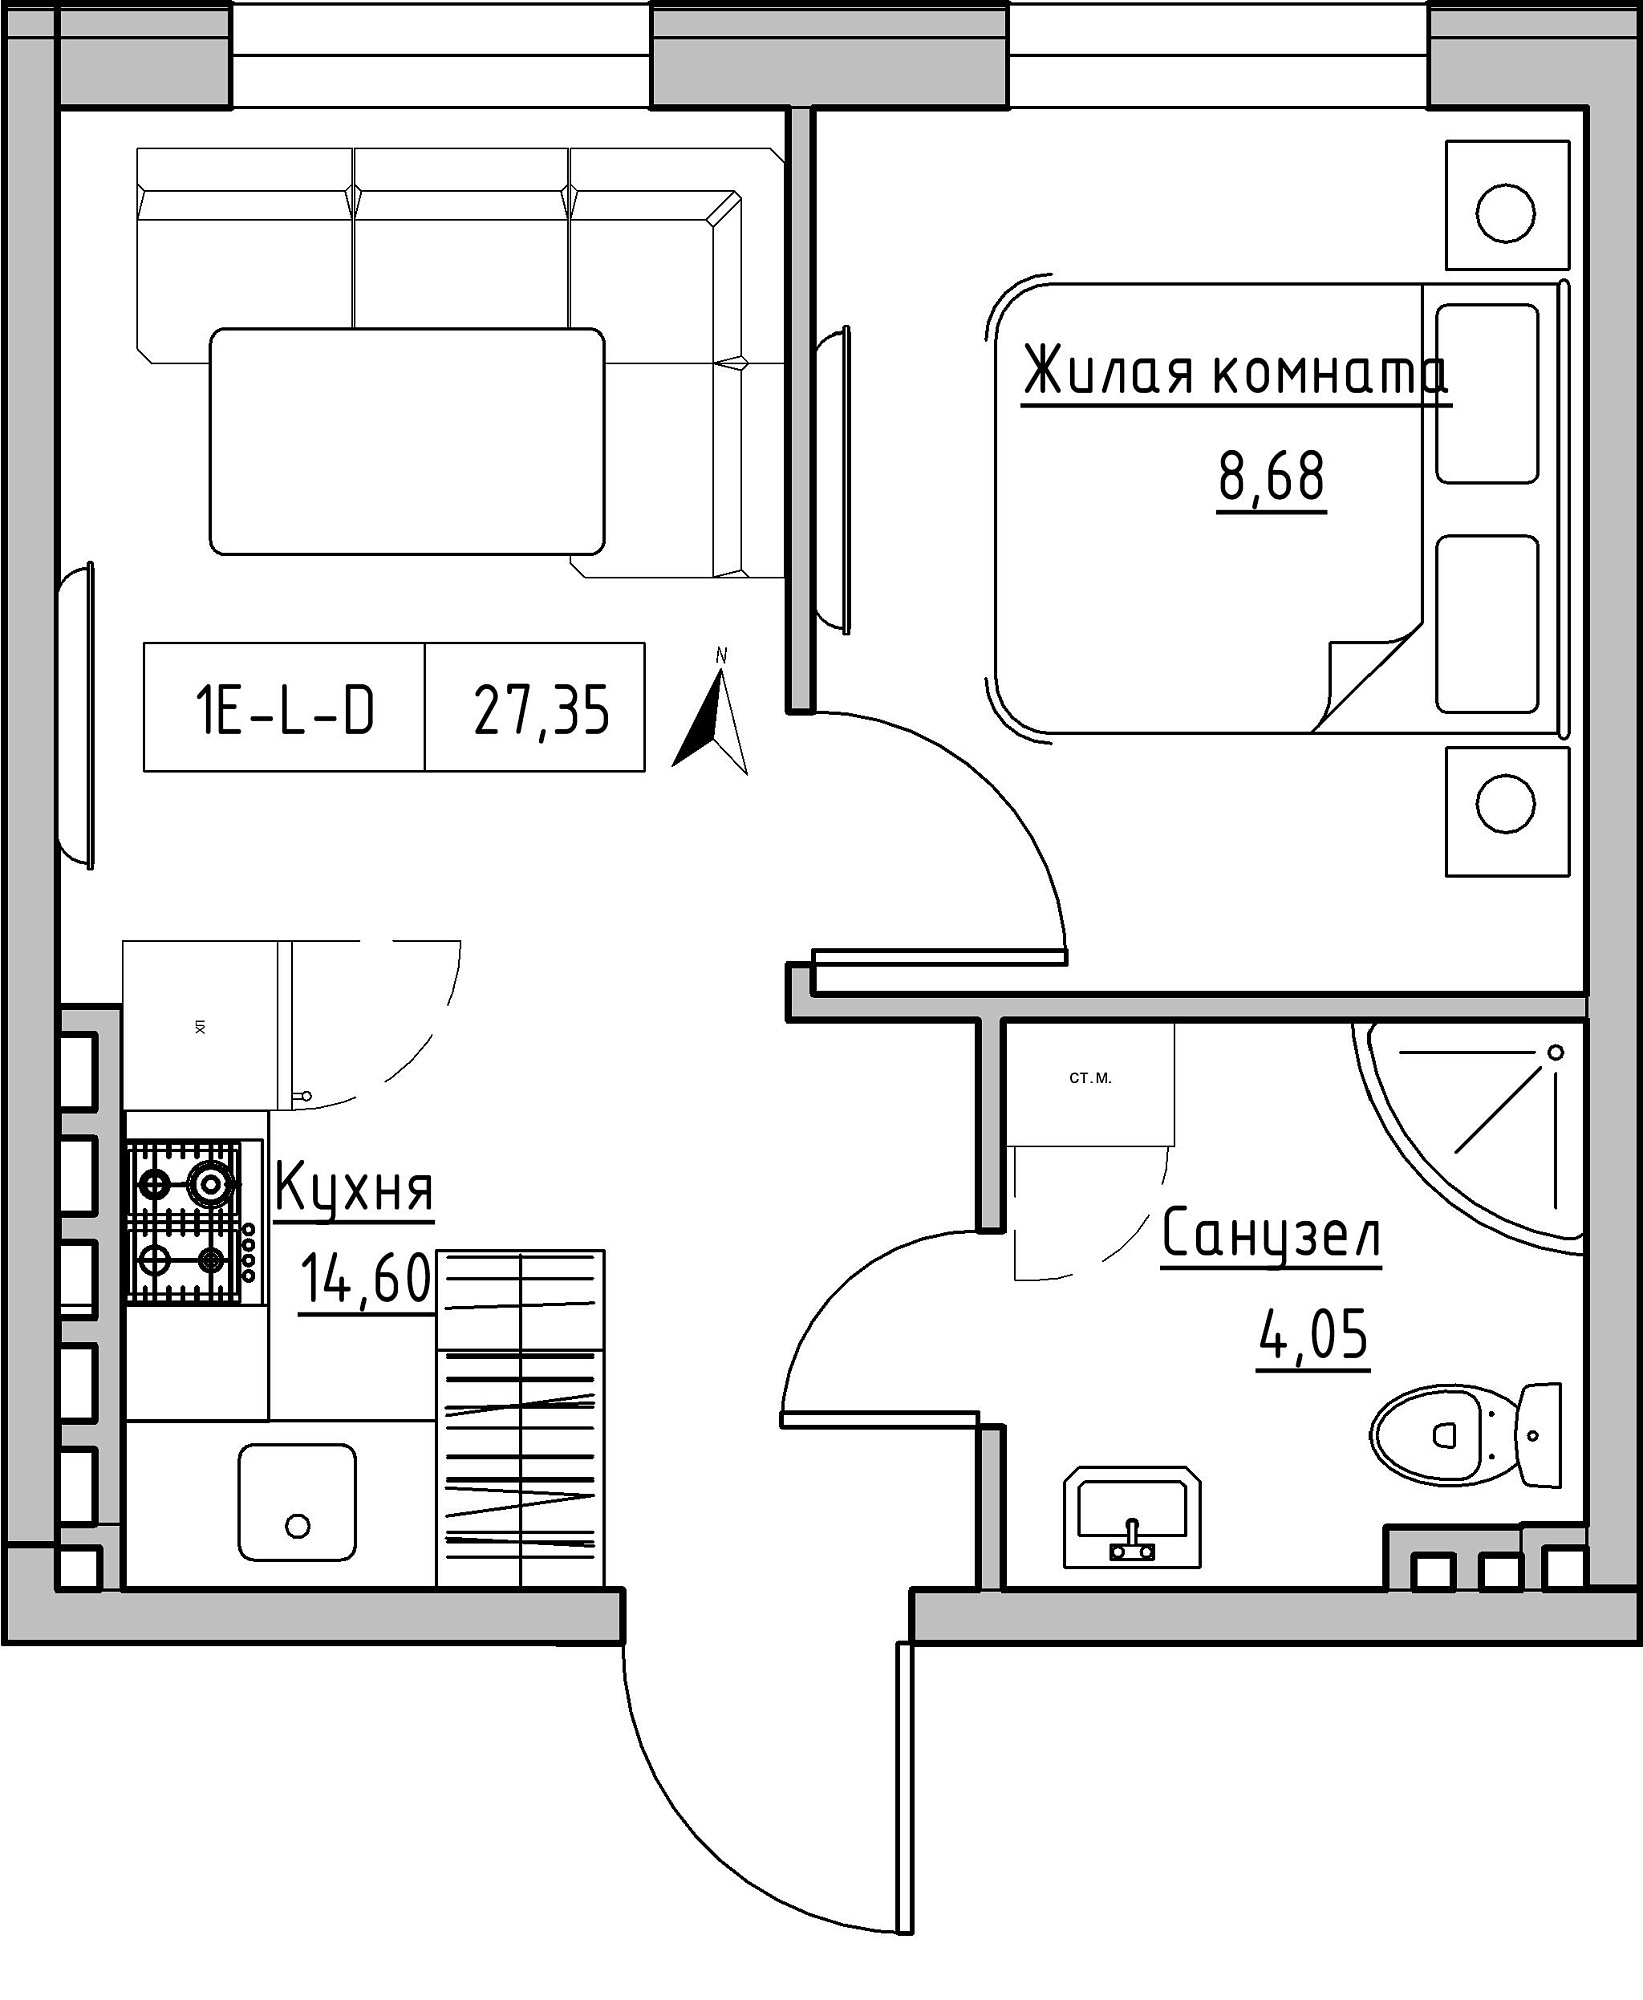 Планировка 1-к квартира площей 27.35м2, KS-024-05/0002.